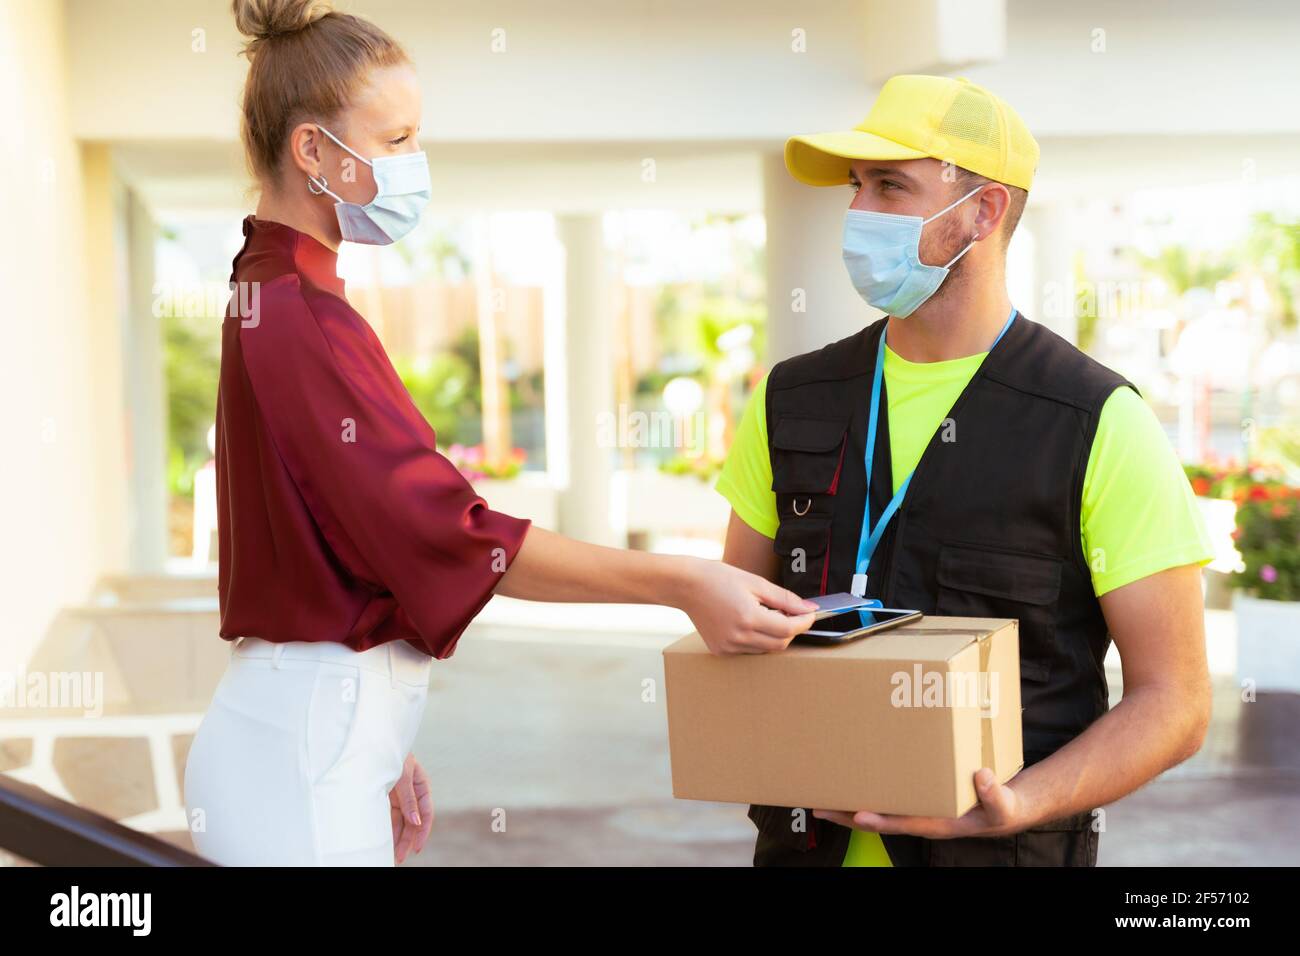 Lieferung von Waren und Paketen an Kunden durch den Schutz mit medizinischen Masken. Online-Bestellung unter Quarantäne Coronavirus covid-19. Stockfoto